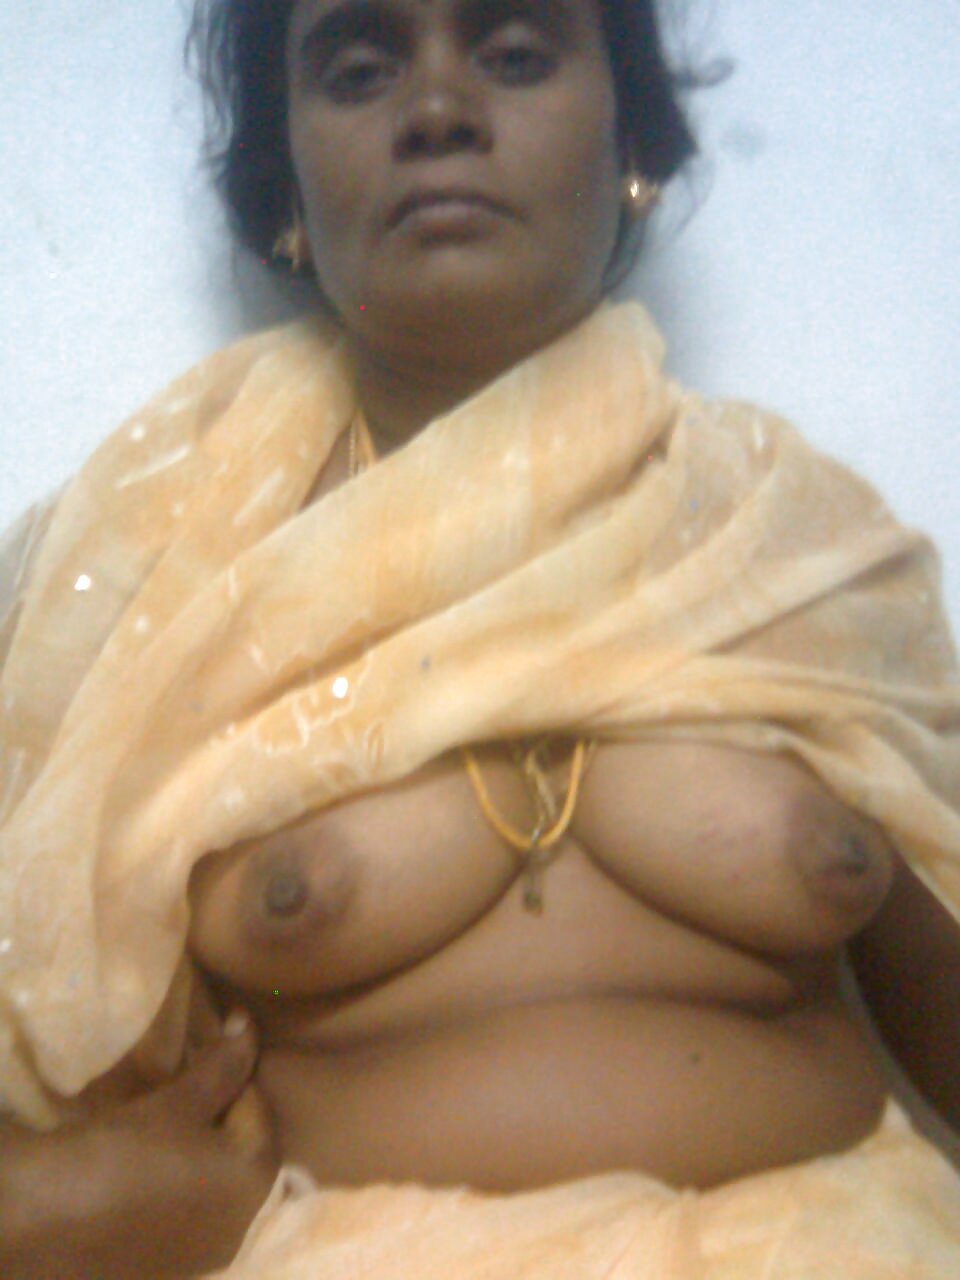 Tamil Aunties Nude Photos - Tamil aunty nude - 60 photo